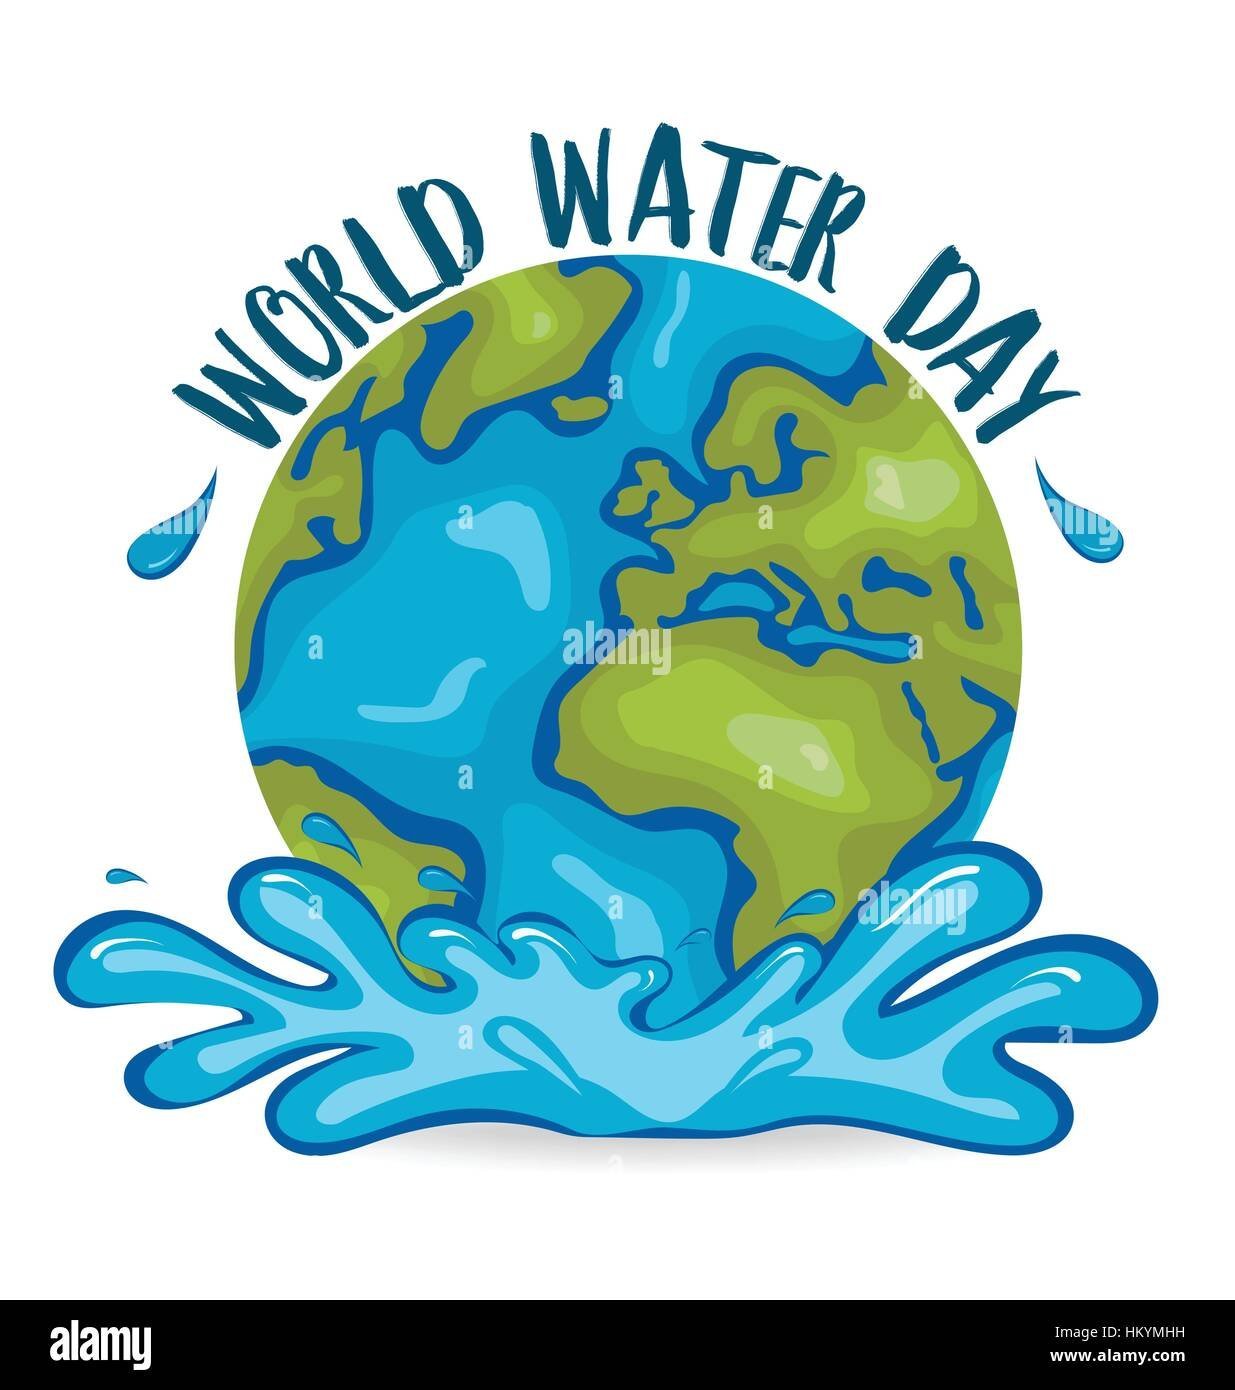 Всемирный день водных ресурсов дата рисунок символ фото